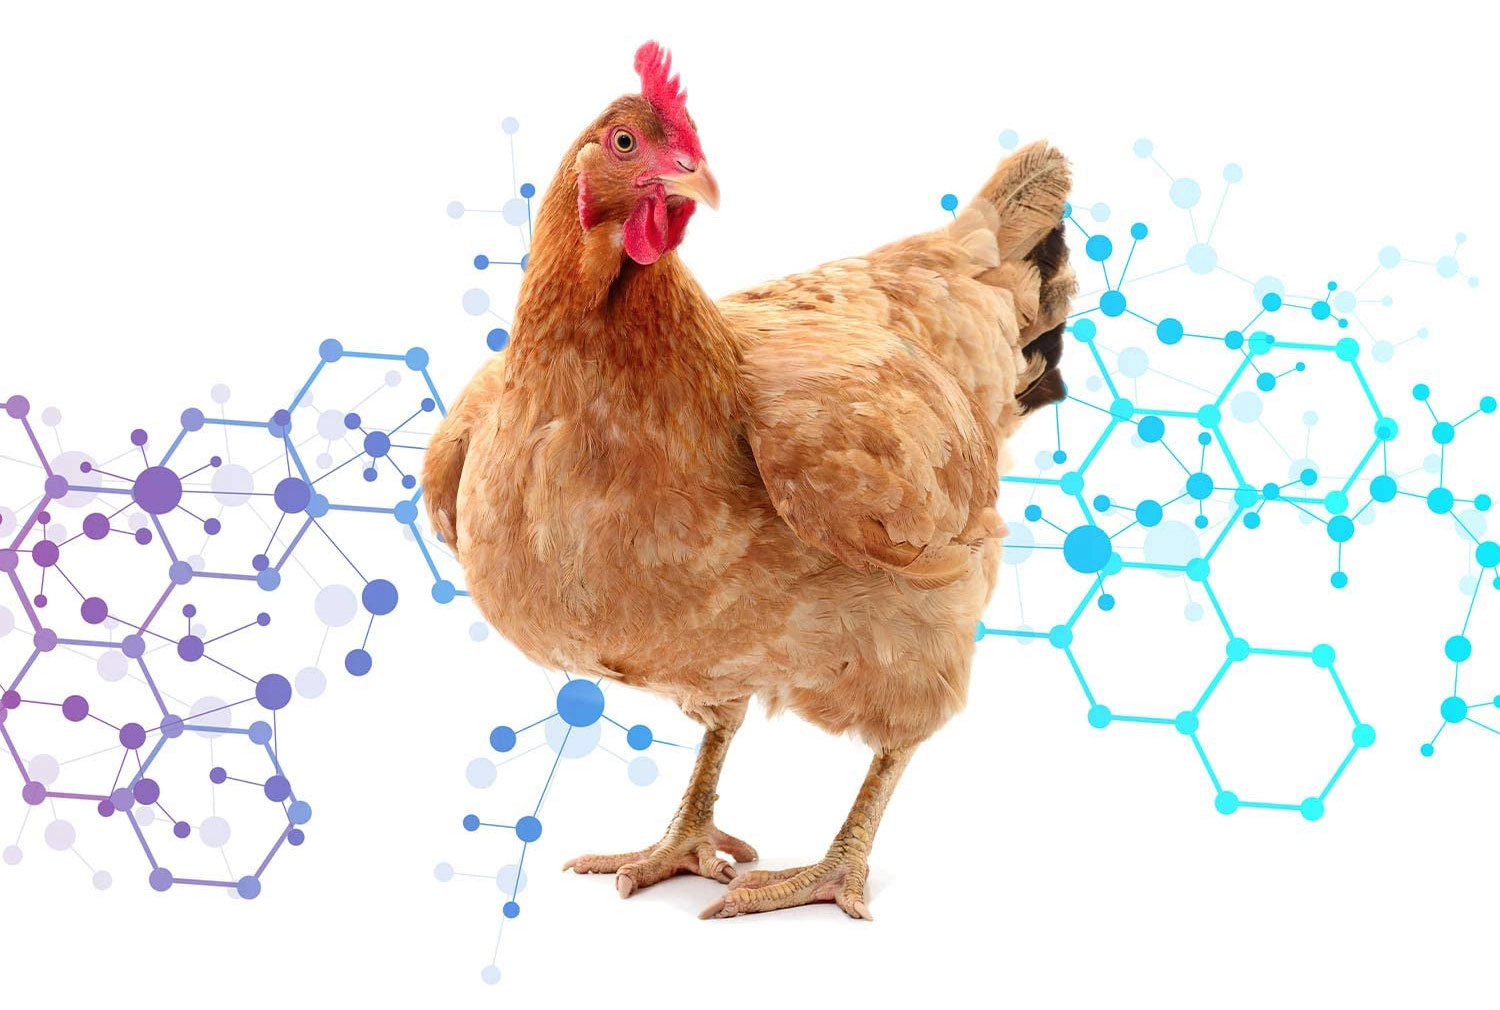 پارا پرو بیوتیک (Paraprobiotic) و پست بیوتیک (postbiotic) در تغذیه مرغ مادر